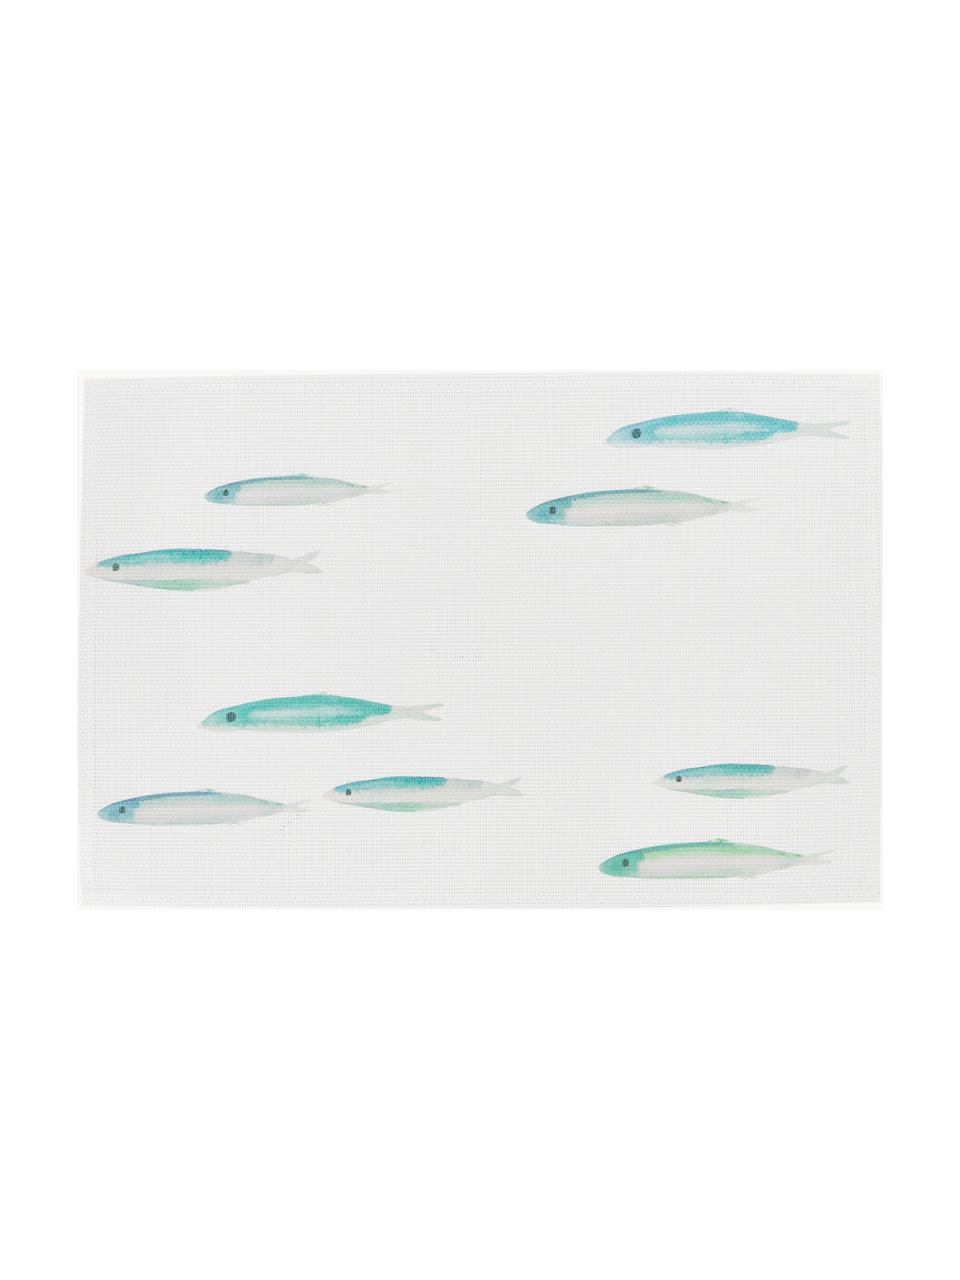 Kunststoff-Tischsets Bordemer, 2 Stück, Kunststoff, Weiss, Blau- und Grautöne, B 30 x L 45 cm